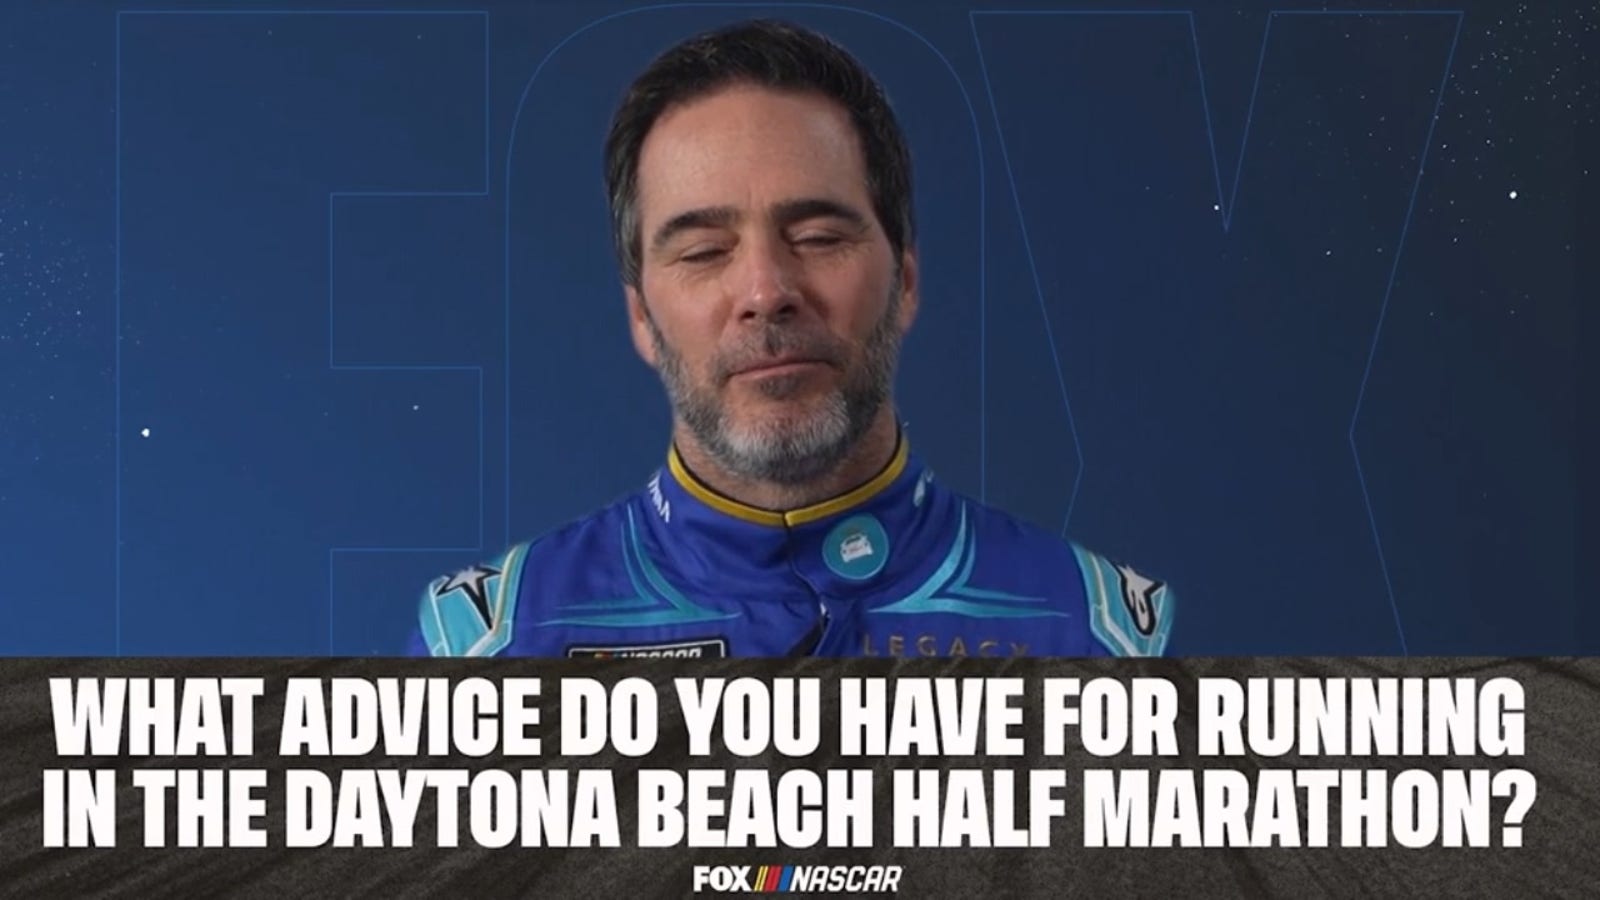 NASCAR drivers give Bob Pockrass advice on running the Daytona Beach Half Marathon